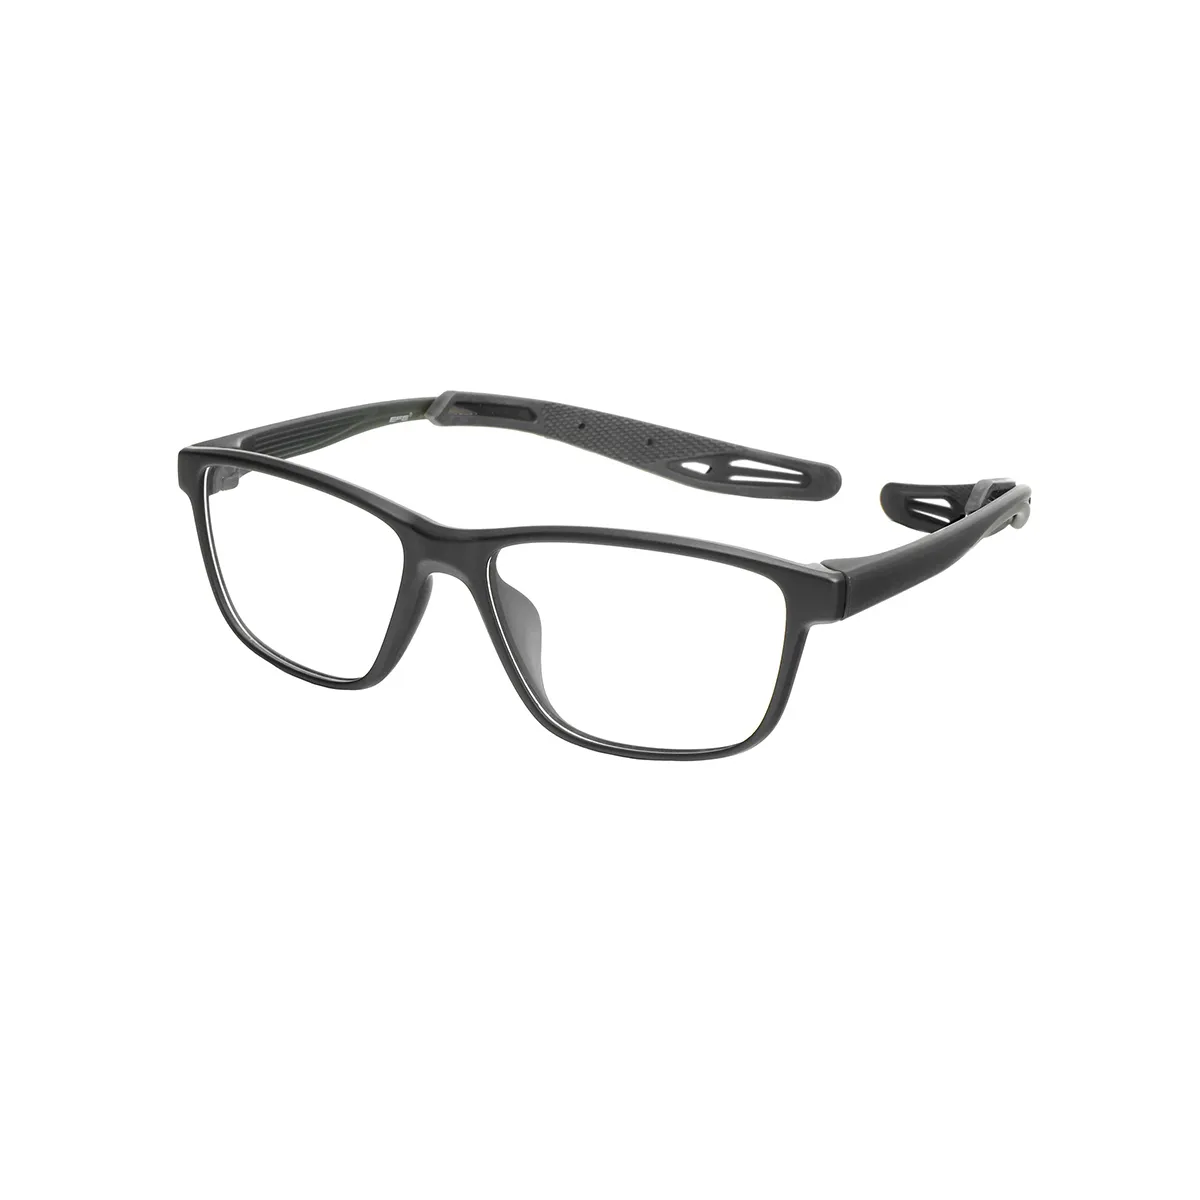 Sports Rectangle Black-Red Eyeglasses for Men